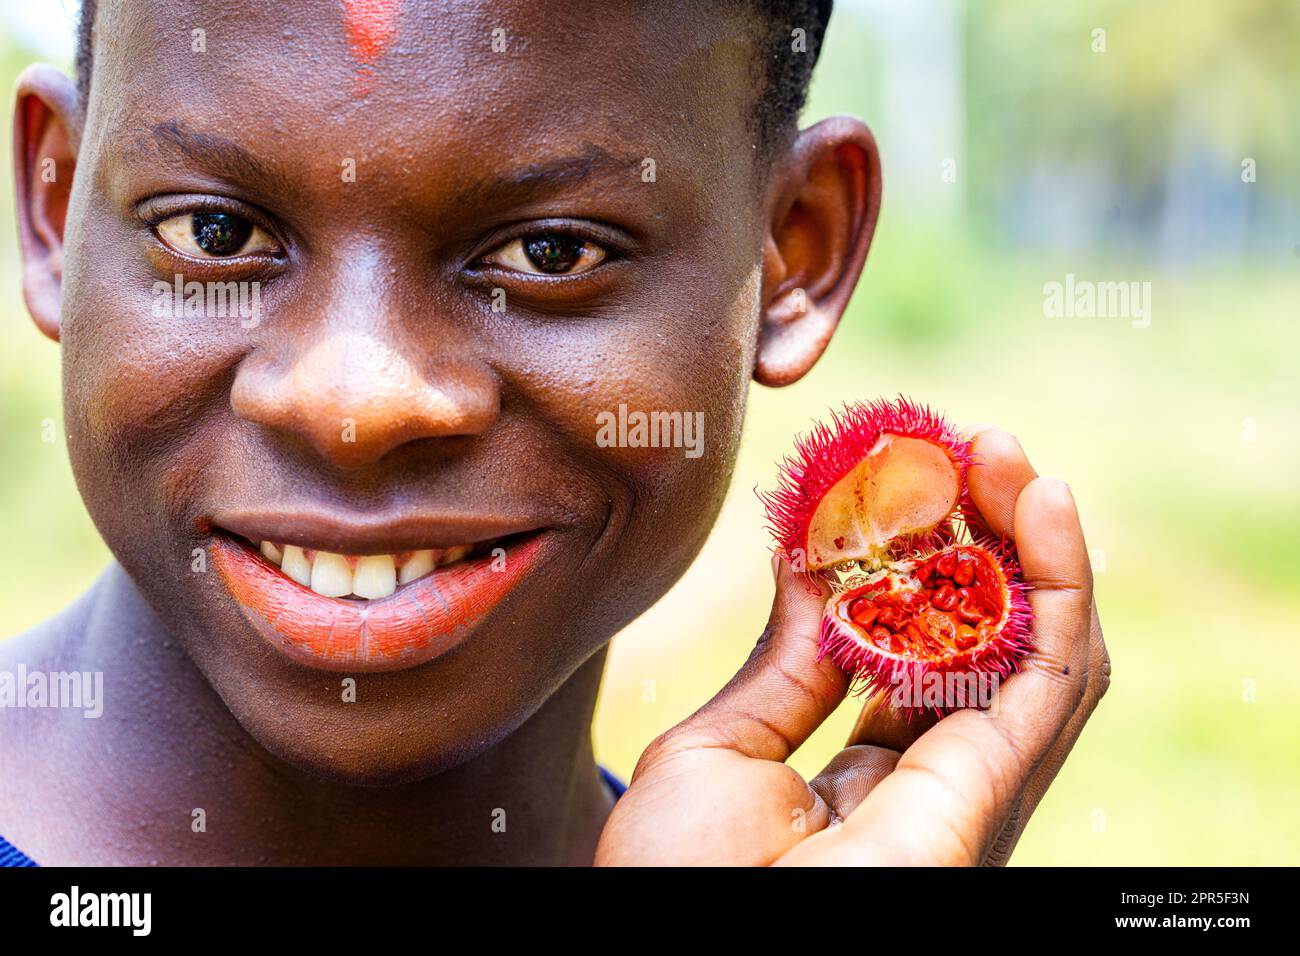 Portrait d'un garçon joyeux montrant des fruits exotiques rouges, Zanzibar, Tanzanie Banque D'Images